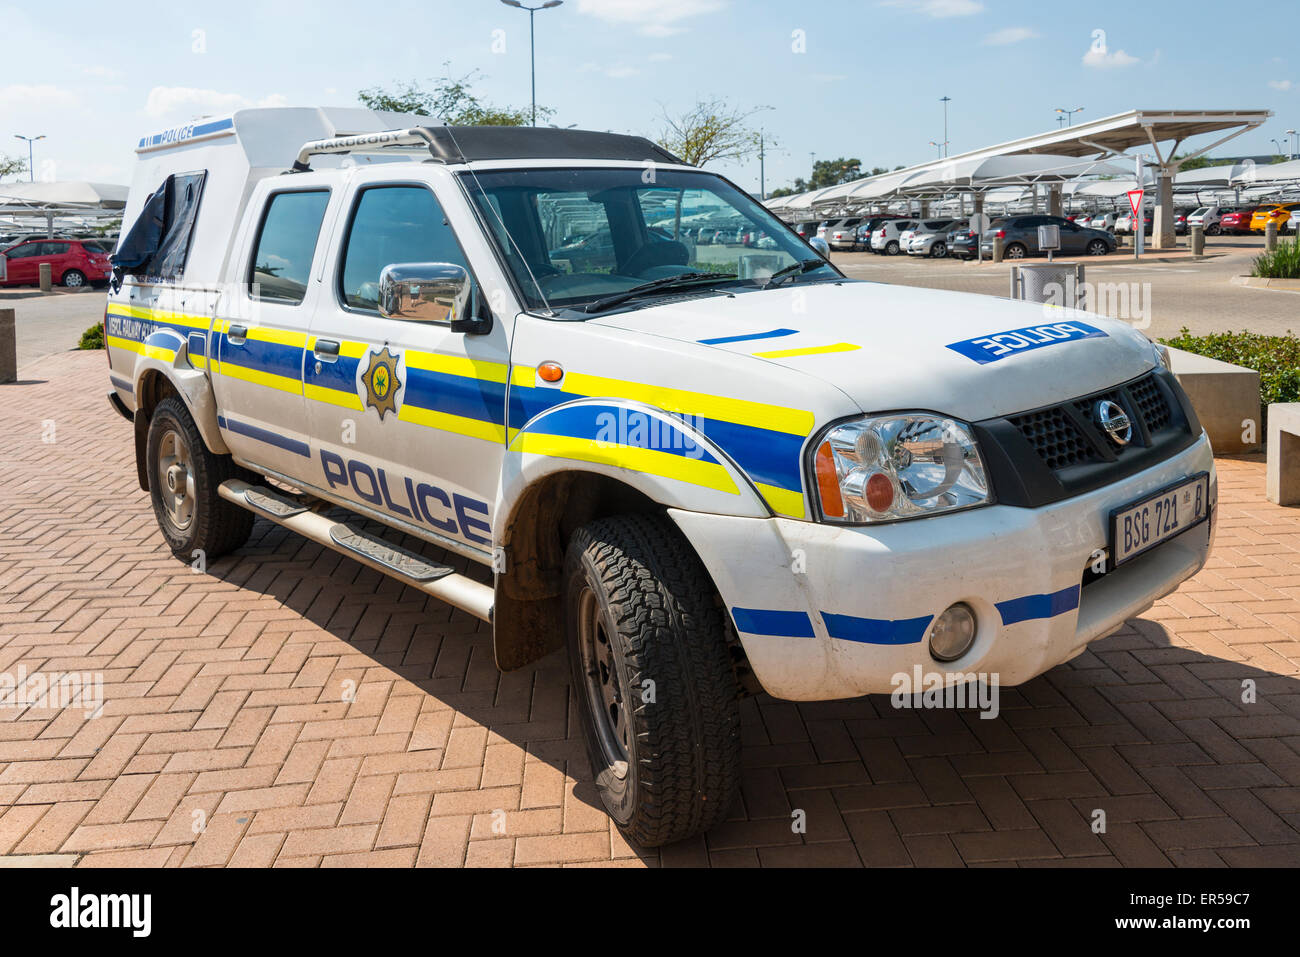 Coche de la policía sudafricana en la estación, Rhodesfield Rhodesfield Gautrain, Kempton Park, provincia de Gauteng, República de Sudáfrica. Foto de stock